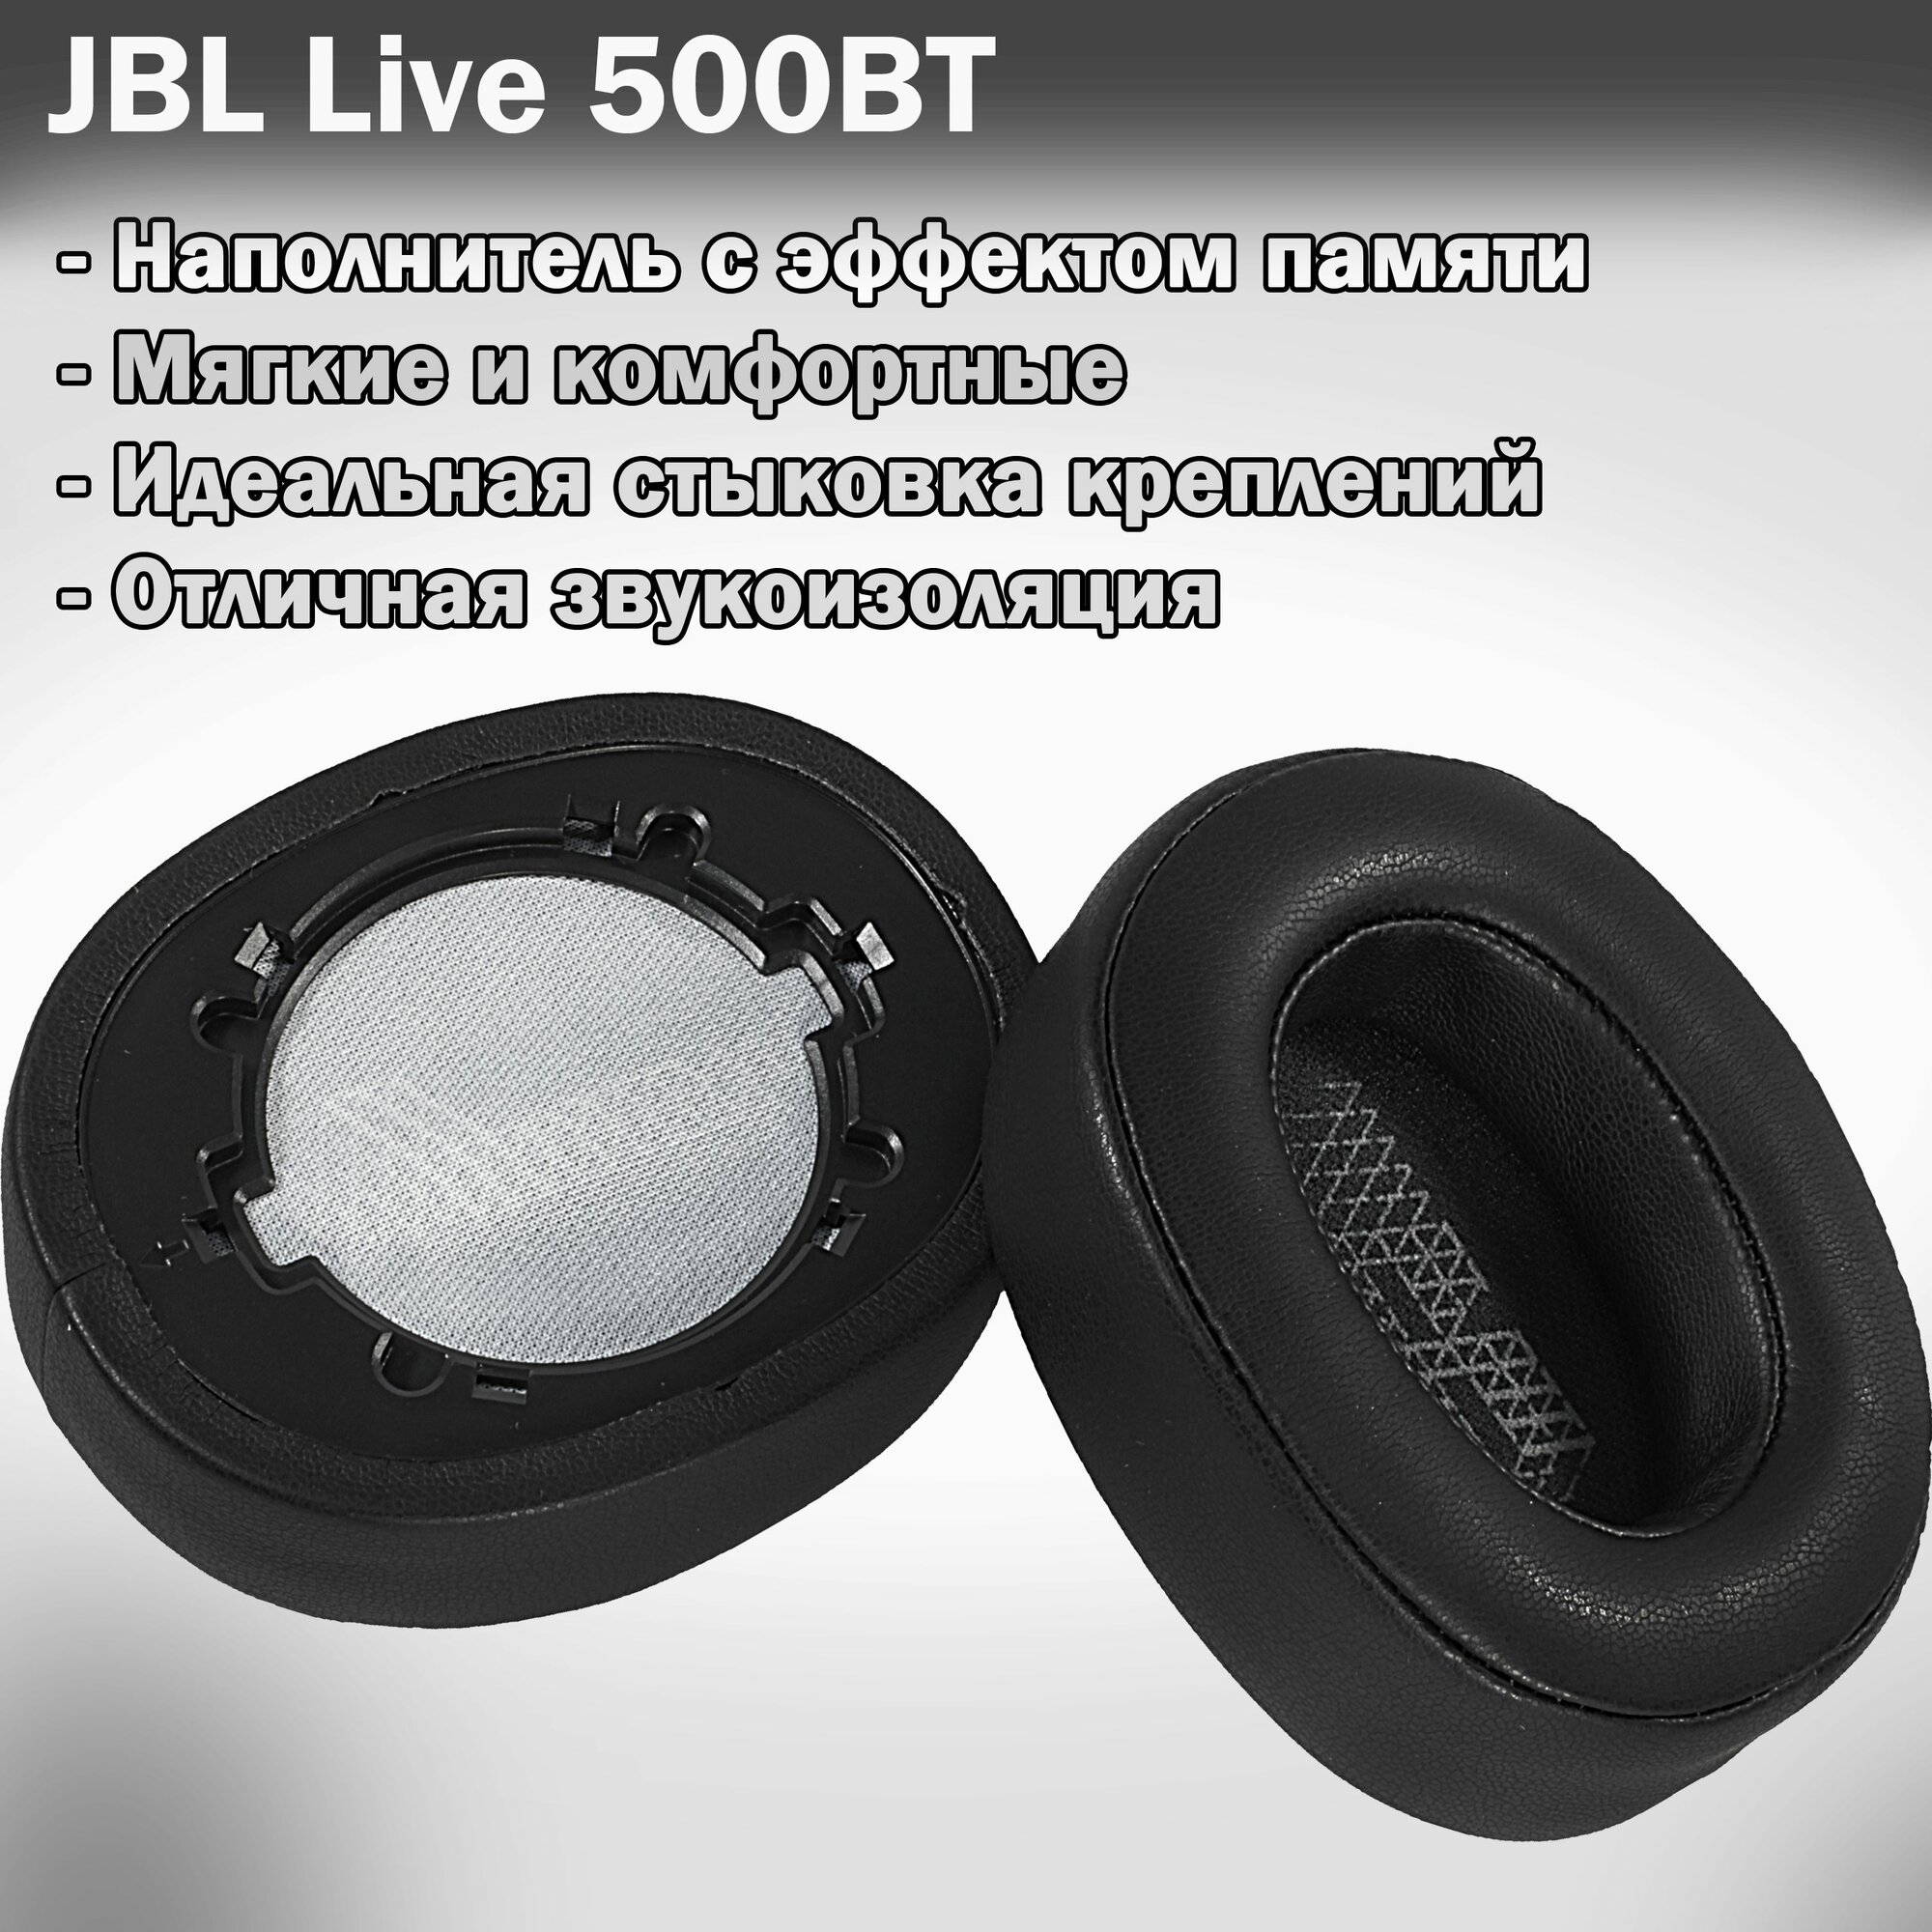 Амбушюры для JBL Live 500BT черные